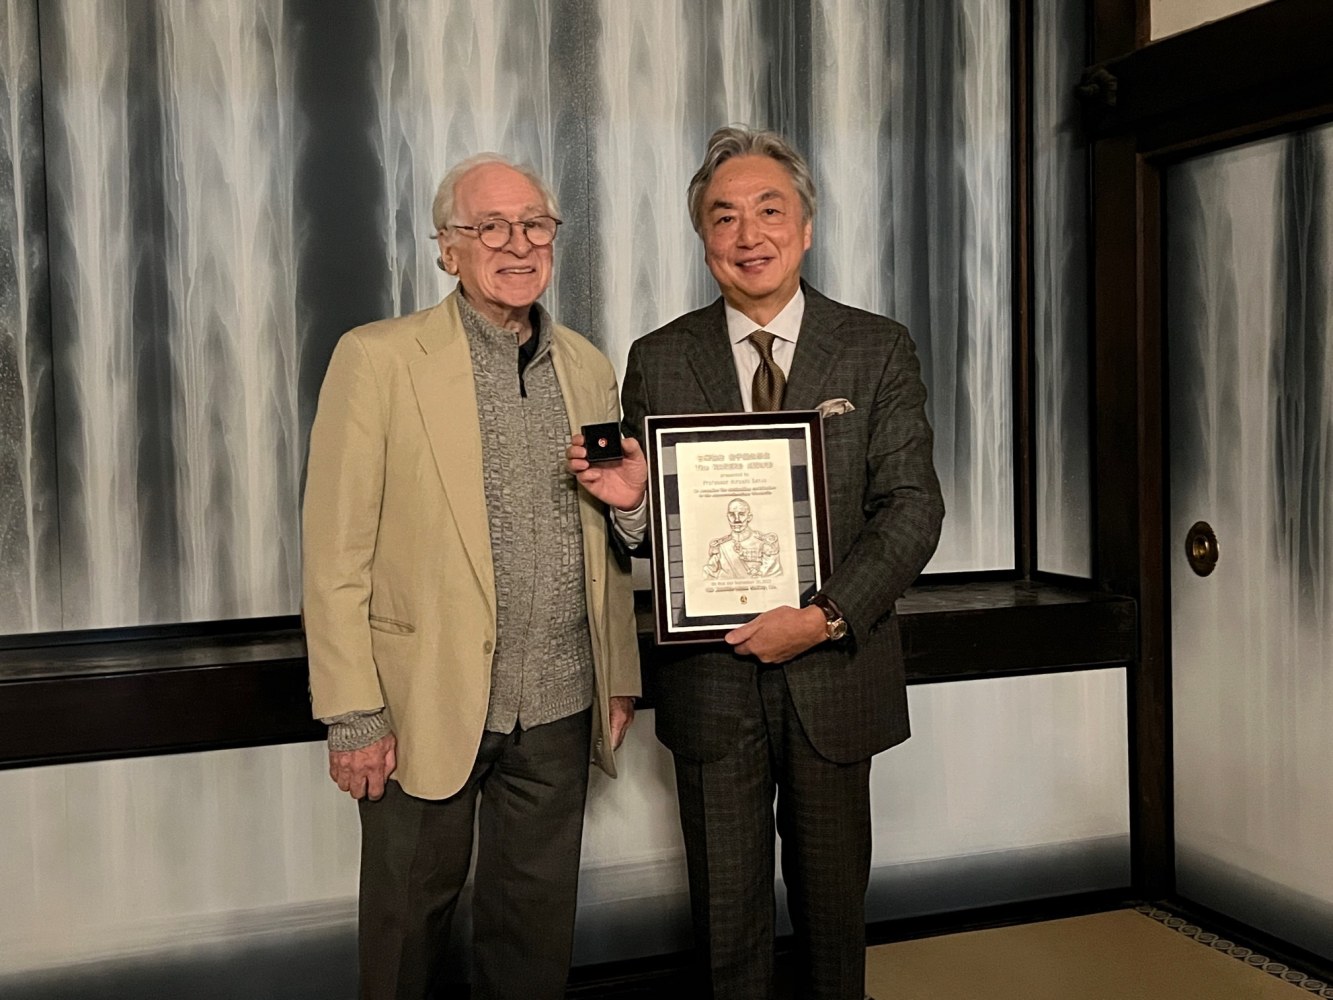 金子堅太郎賞特別賞を同時に受賞された、ジェラルド・カーティス・コロンビア大学名誉教授が、高野山金剛峯寺を訪ねてくださいましたので御同行致しました。代理で先生が保管して下さっていた表彰状を頂きました。